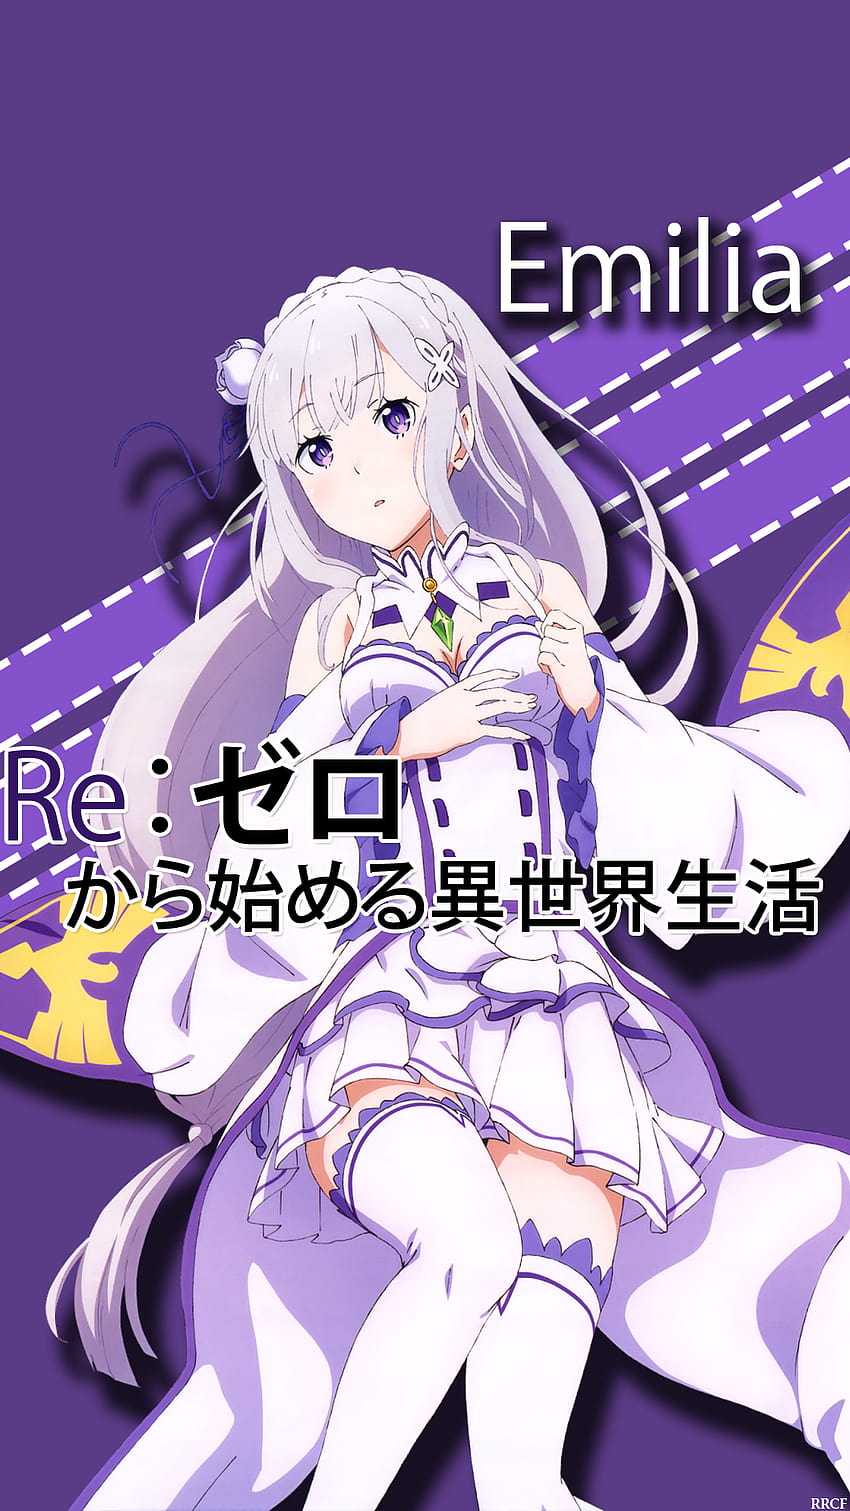 Anime Re Zero Emilia , Re zero Emilia, re zero android HD phone ...